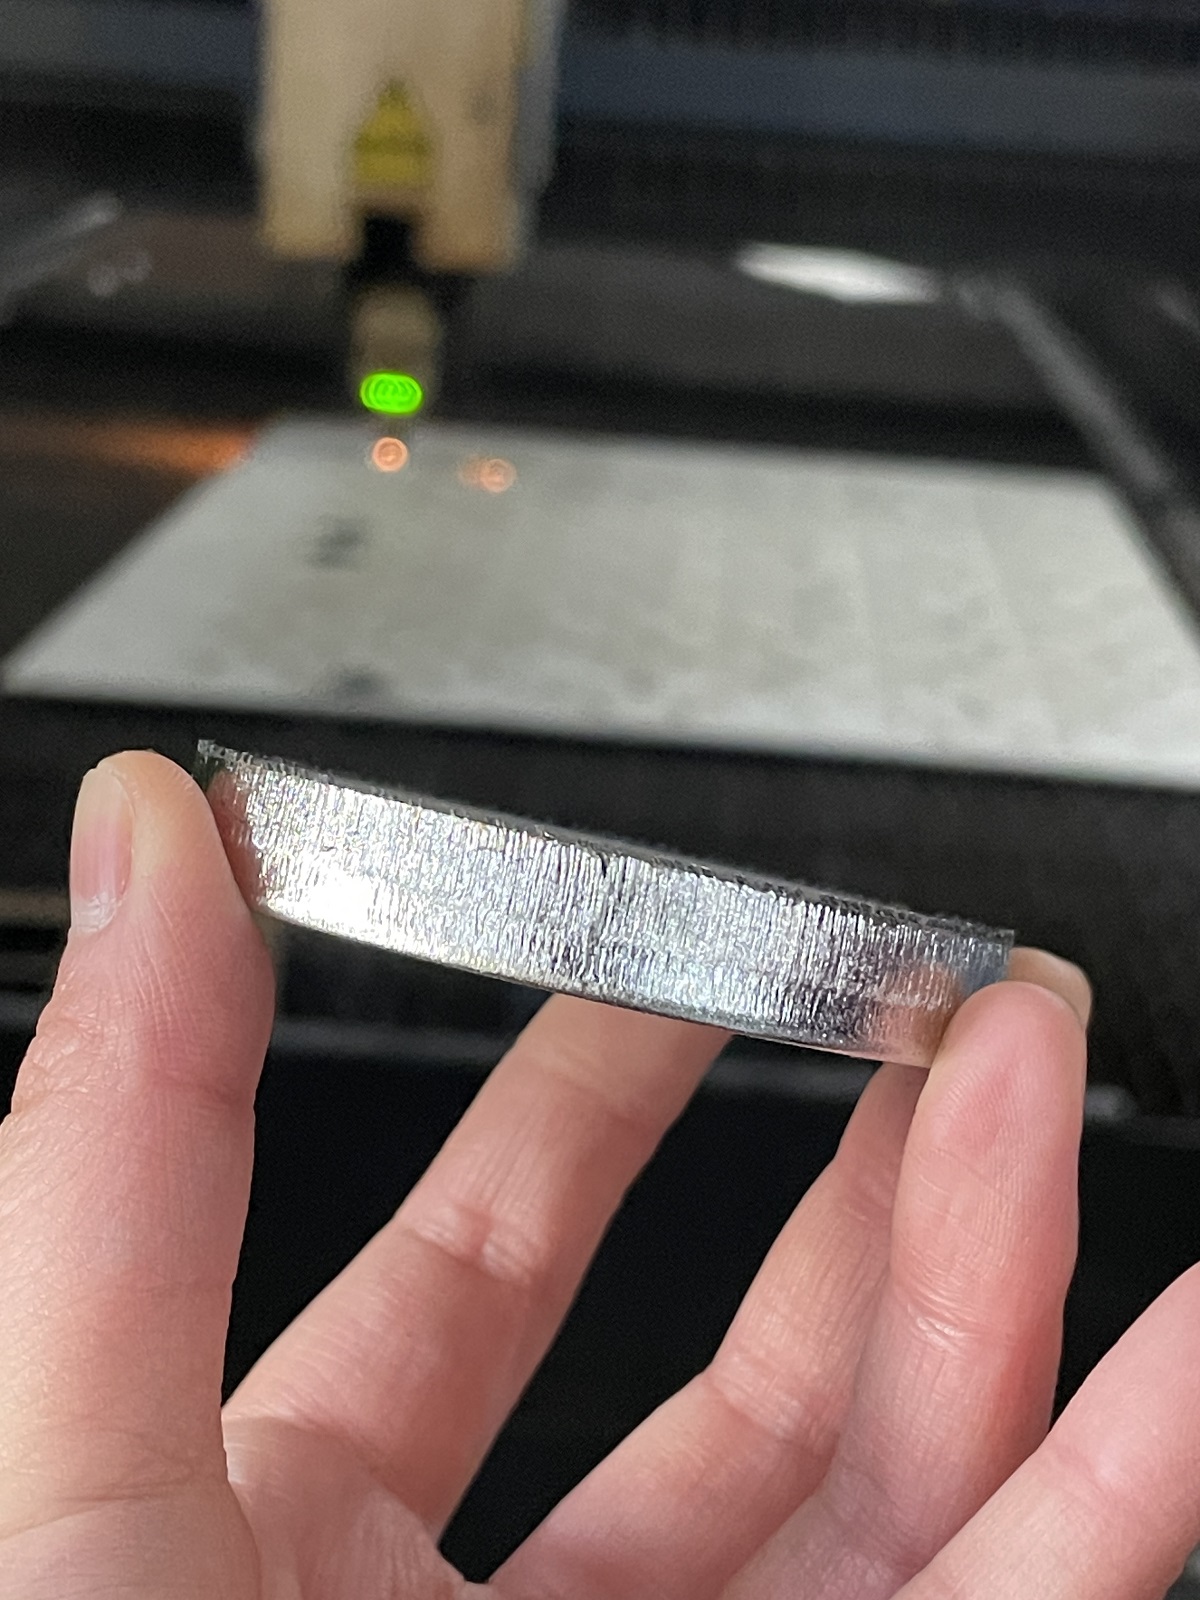 Metal bending Laser cutting